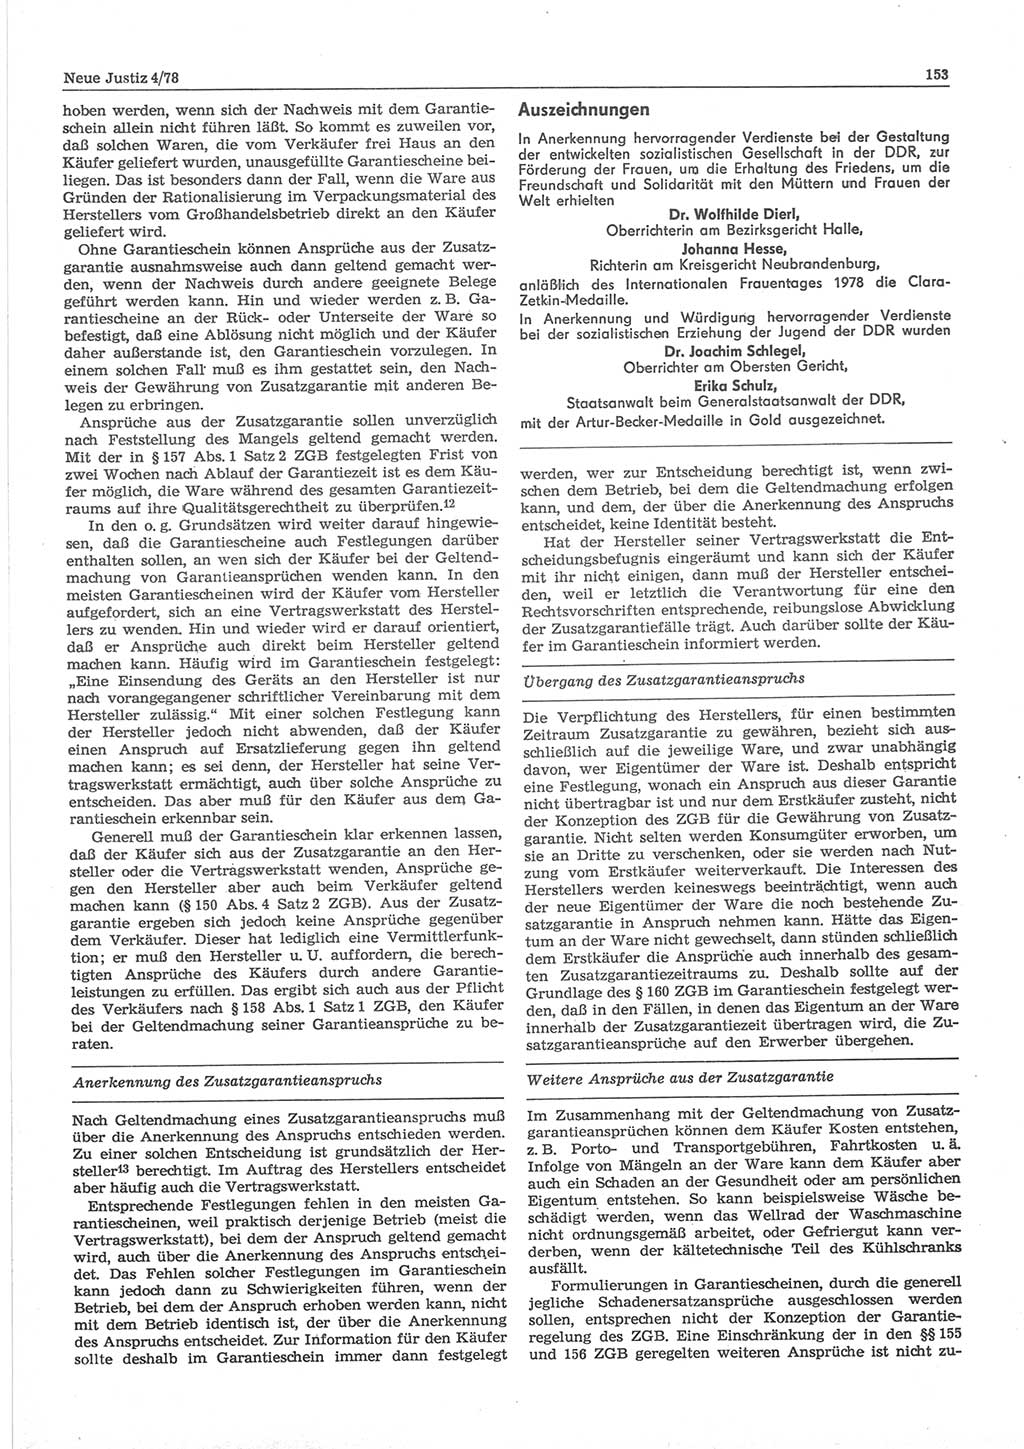 Neue Justiz (NJ), Zeitschrift für sozialistisches Recht und Gesetzlichkeit [Deutsche Demokratische Republik (DDR)], 32. Jahrgang 1978, Seite 153 (NJ DDR 1978, S. 153)